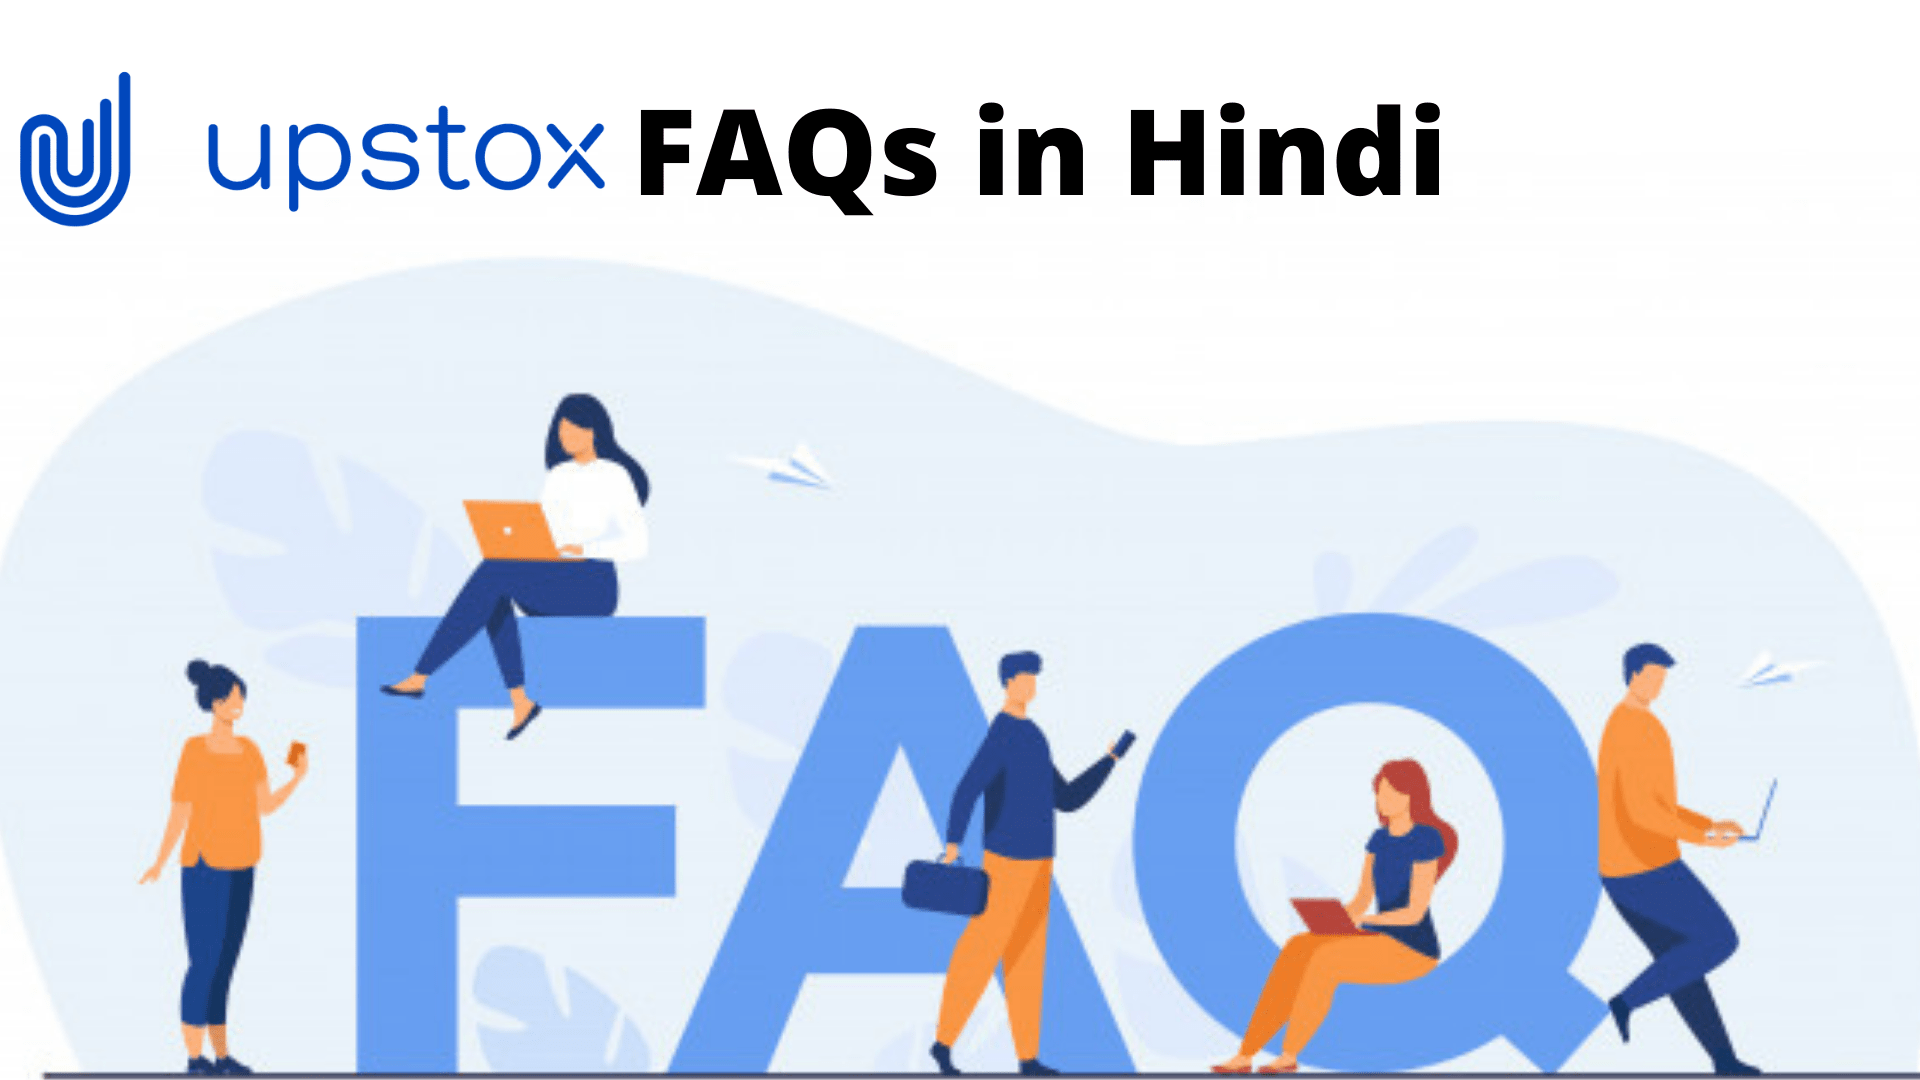 Upstox FAQ in Hindi